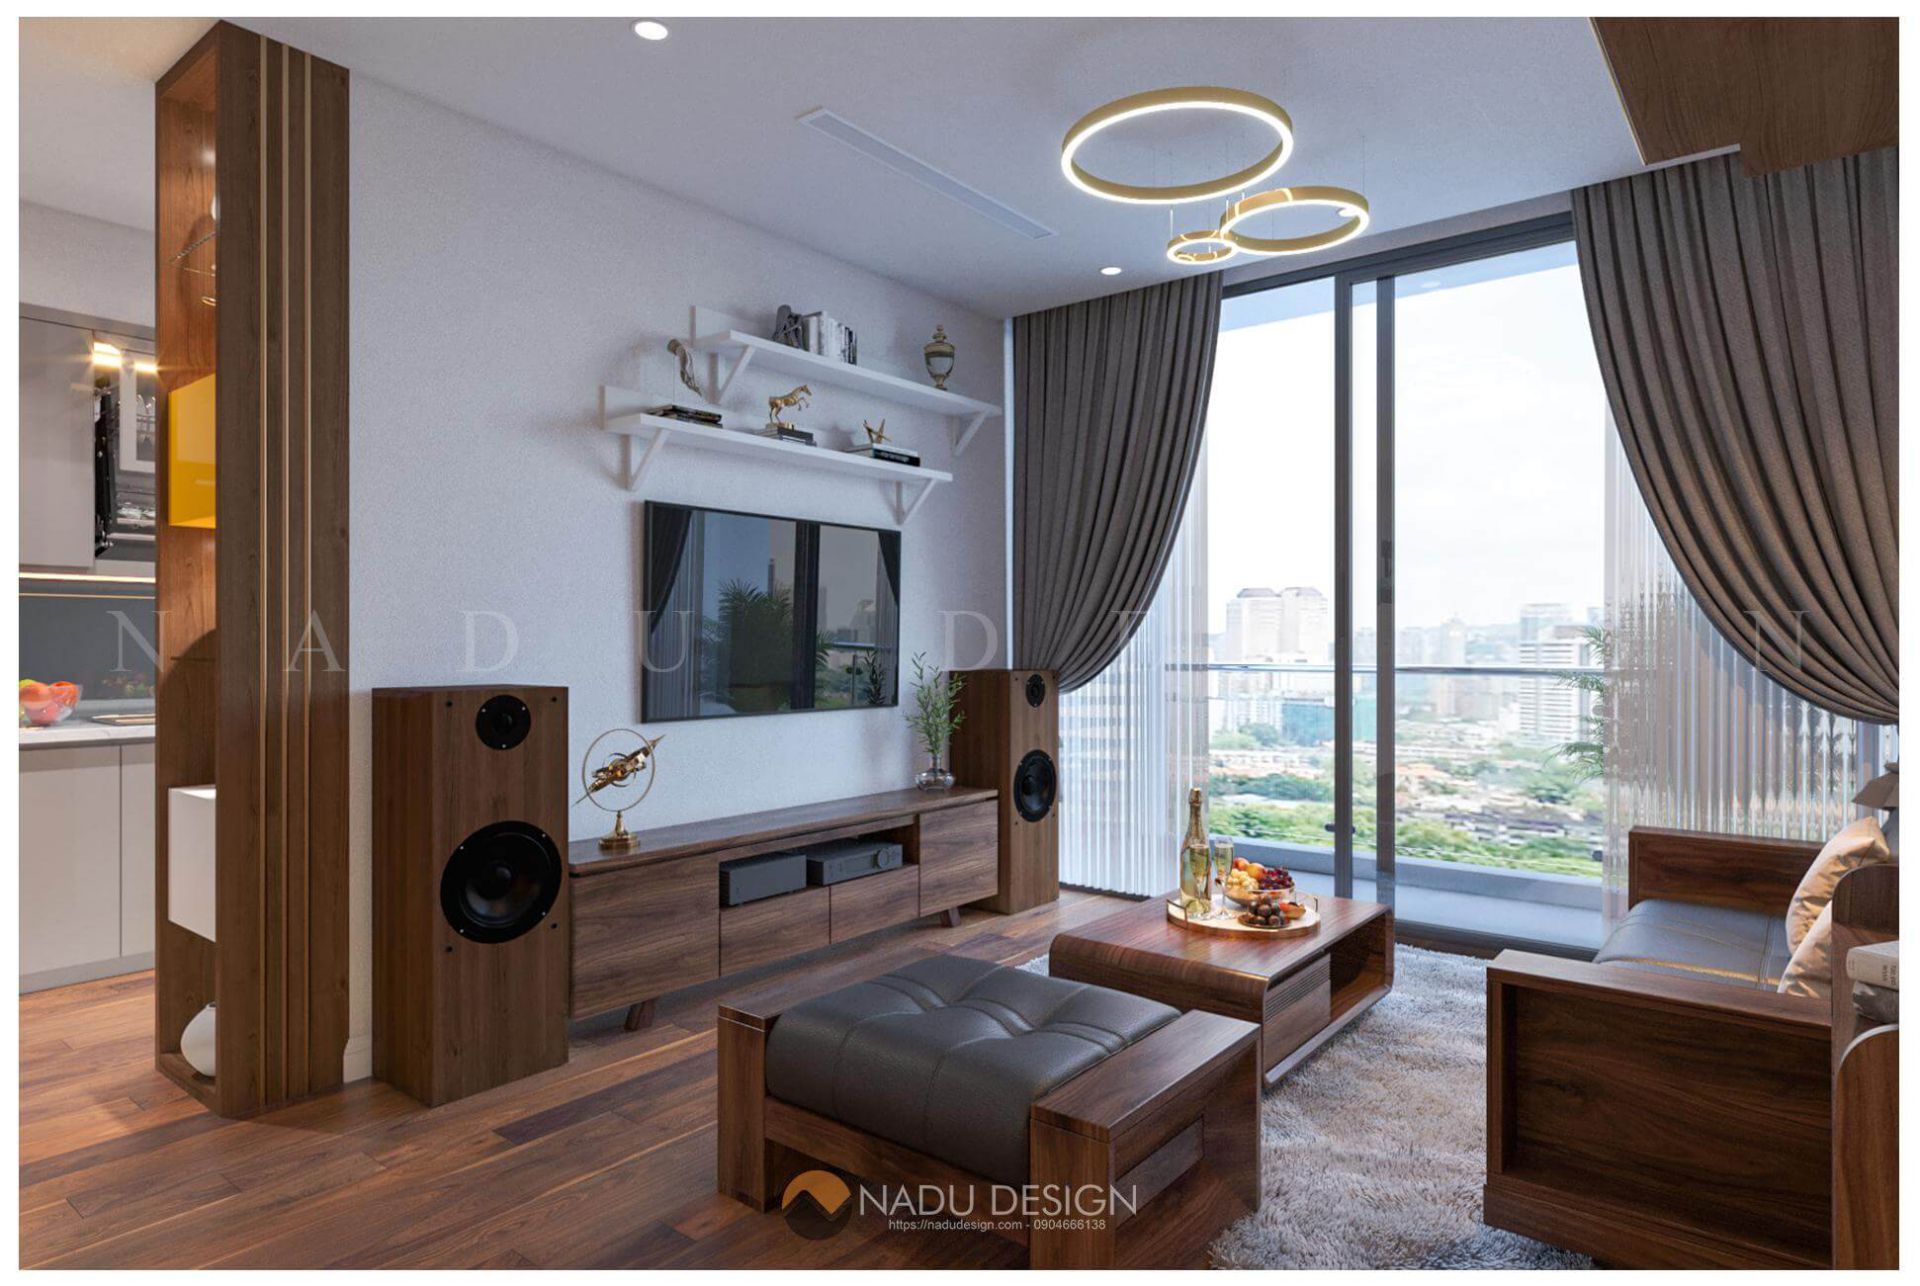 Thiết kế nội thất chung cư cho căn hộ 70m2 nhà anh Quyền tại Home City   Nội thất M8